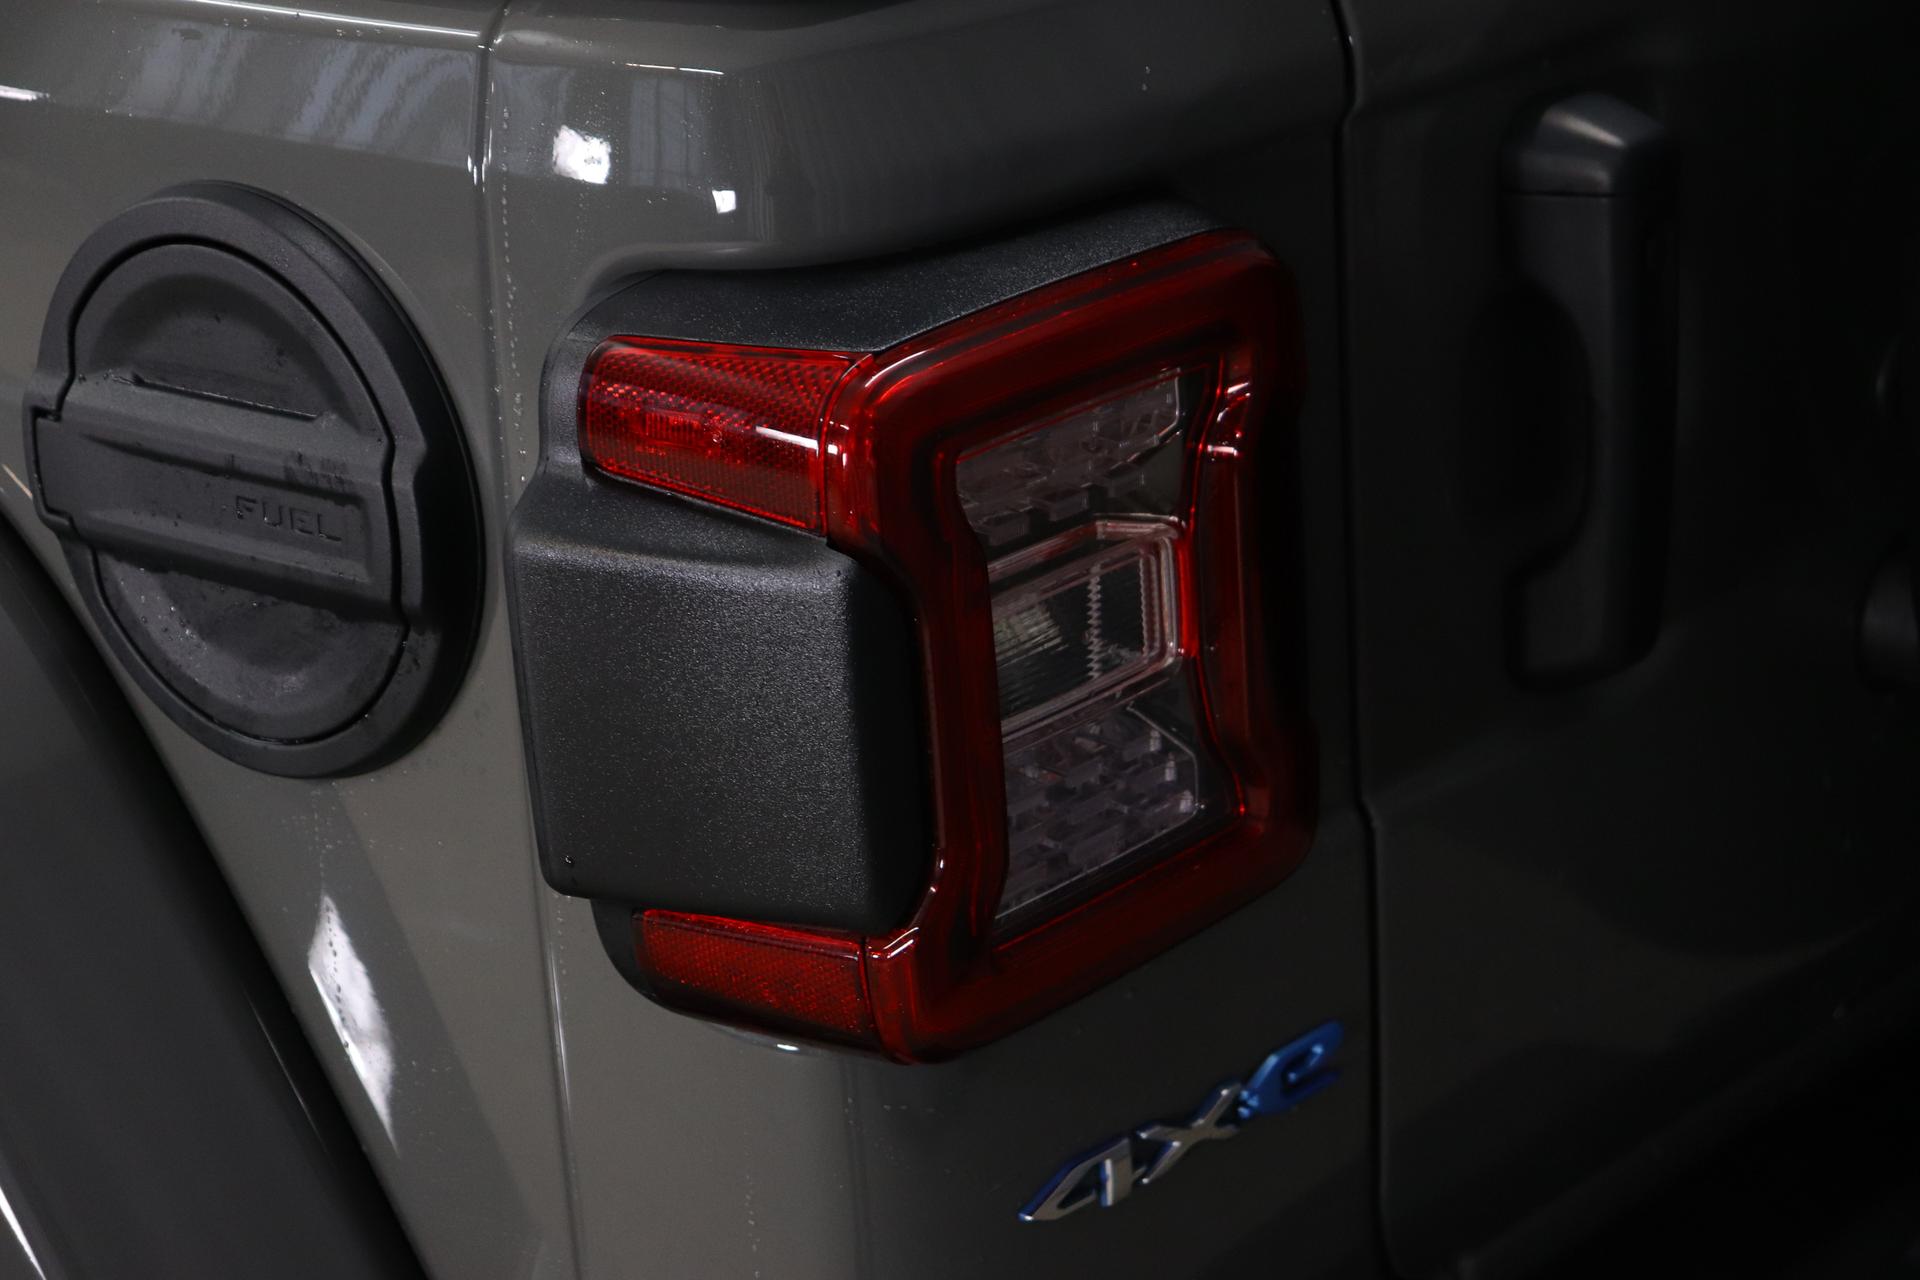 Jeep Wrangler Unlimited Sahara 2.0 280KW UVP 85.140,00 € Plug-In Hybrid,  Overland Paket, Technologie Dachhimmel mit zusätzlicher Geräuschdämmung,  Alarmanlage, Sicherheitspaket, Gorilla Glas, Geschwindigkeitsregelanlage  adaptiv, Totwinkel Assistent